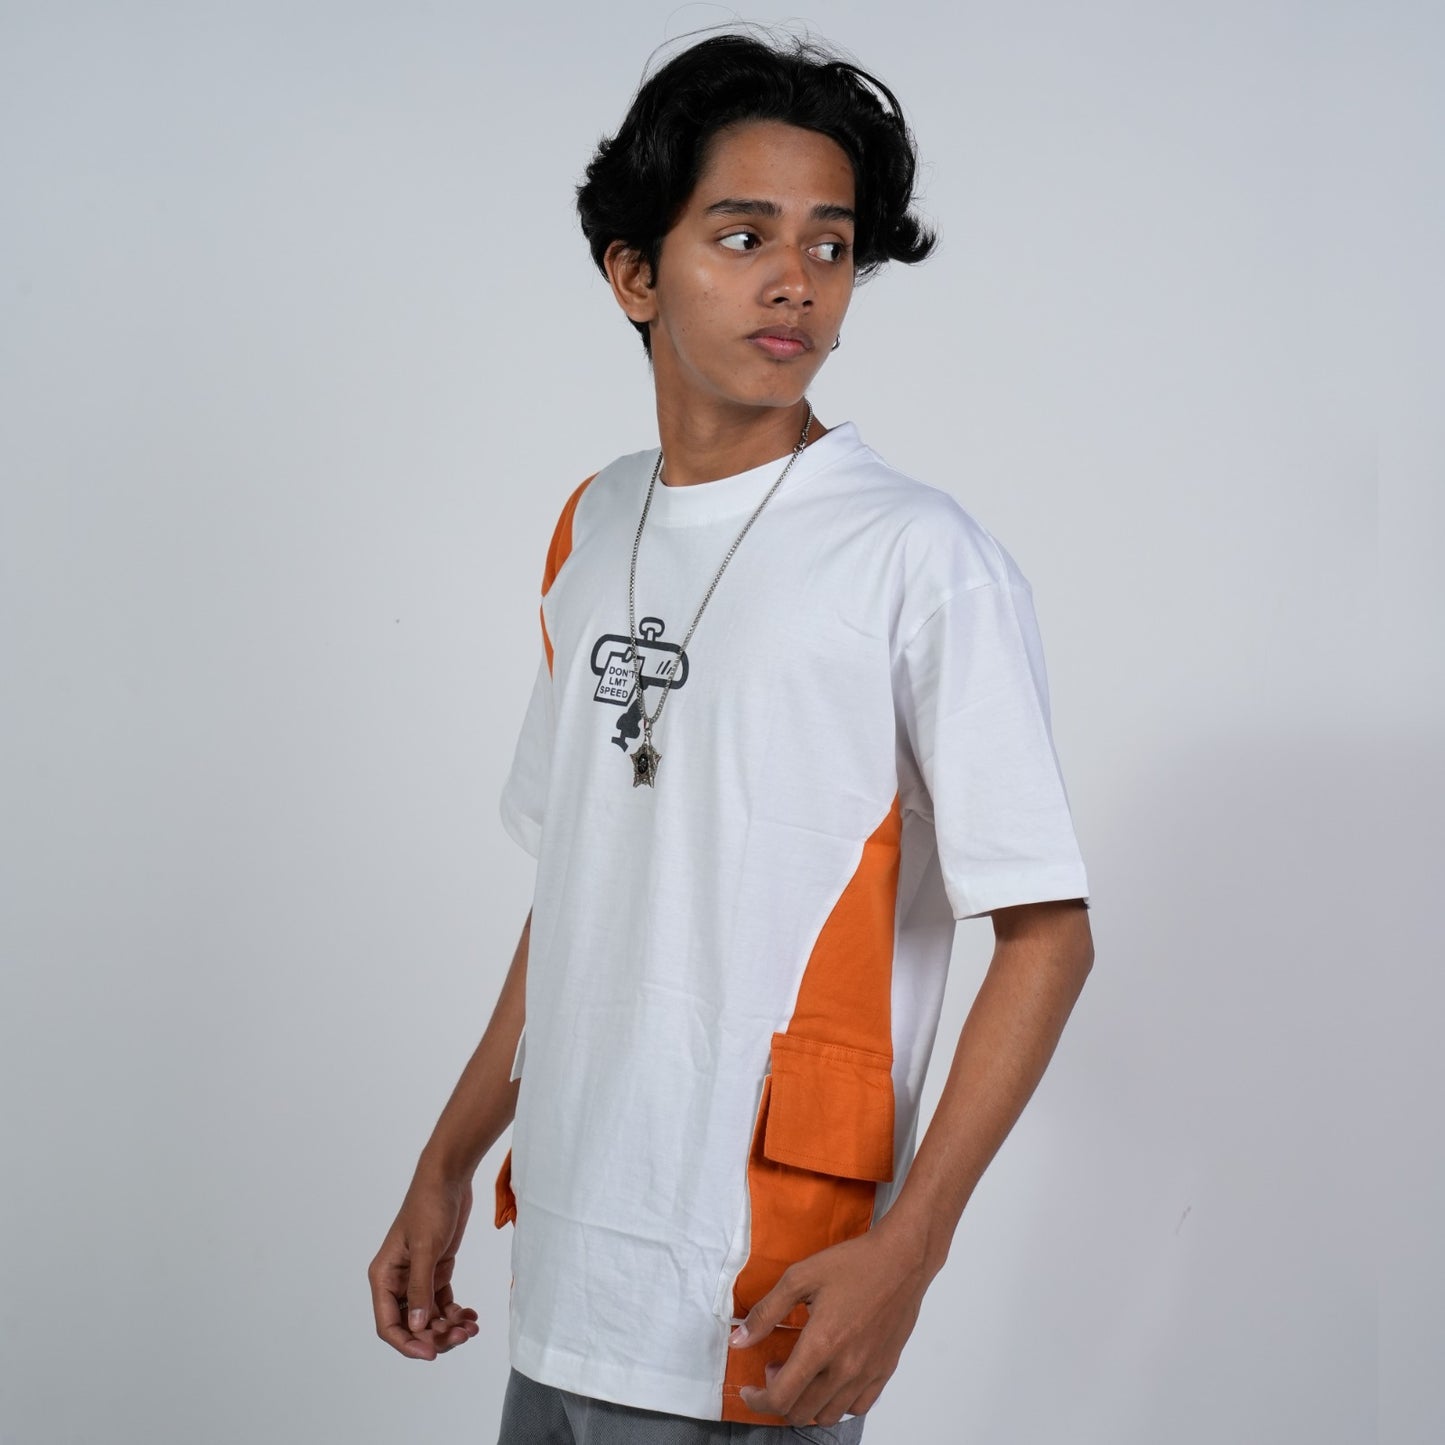 SONIBROS  Bold Comfort: Oversize Pocket Orange Design T-Shirt for Effortless Style